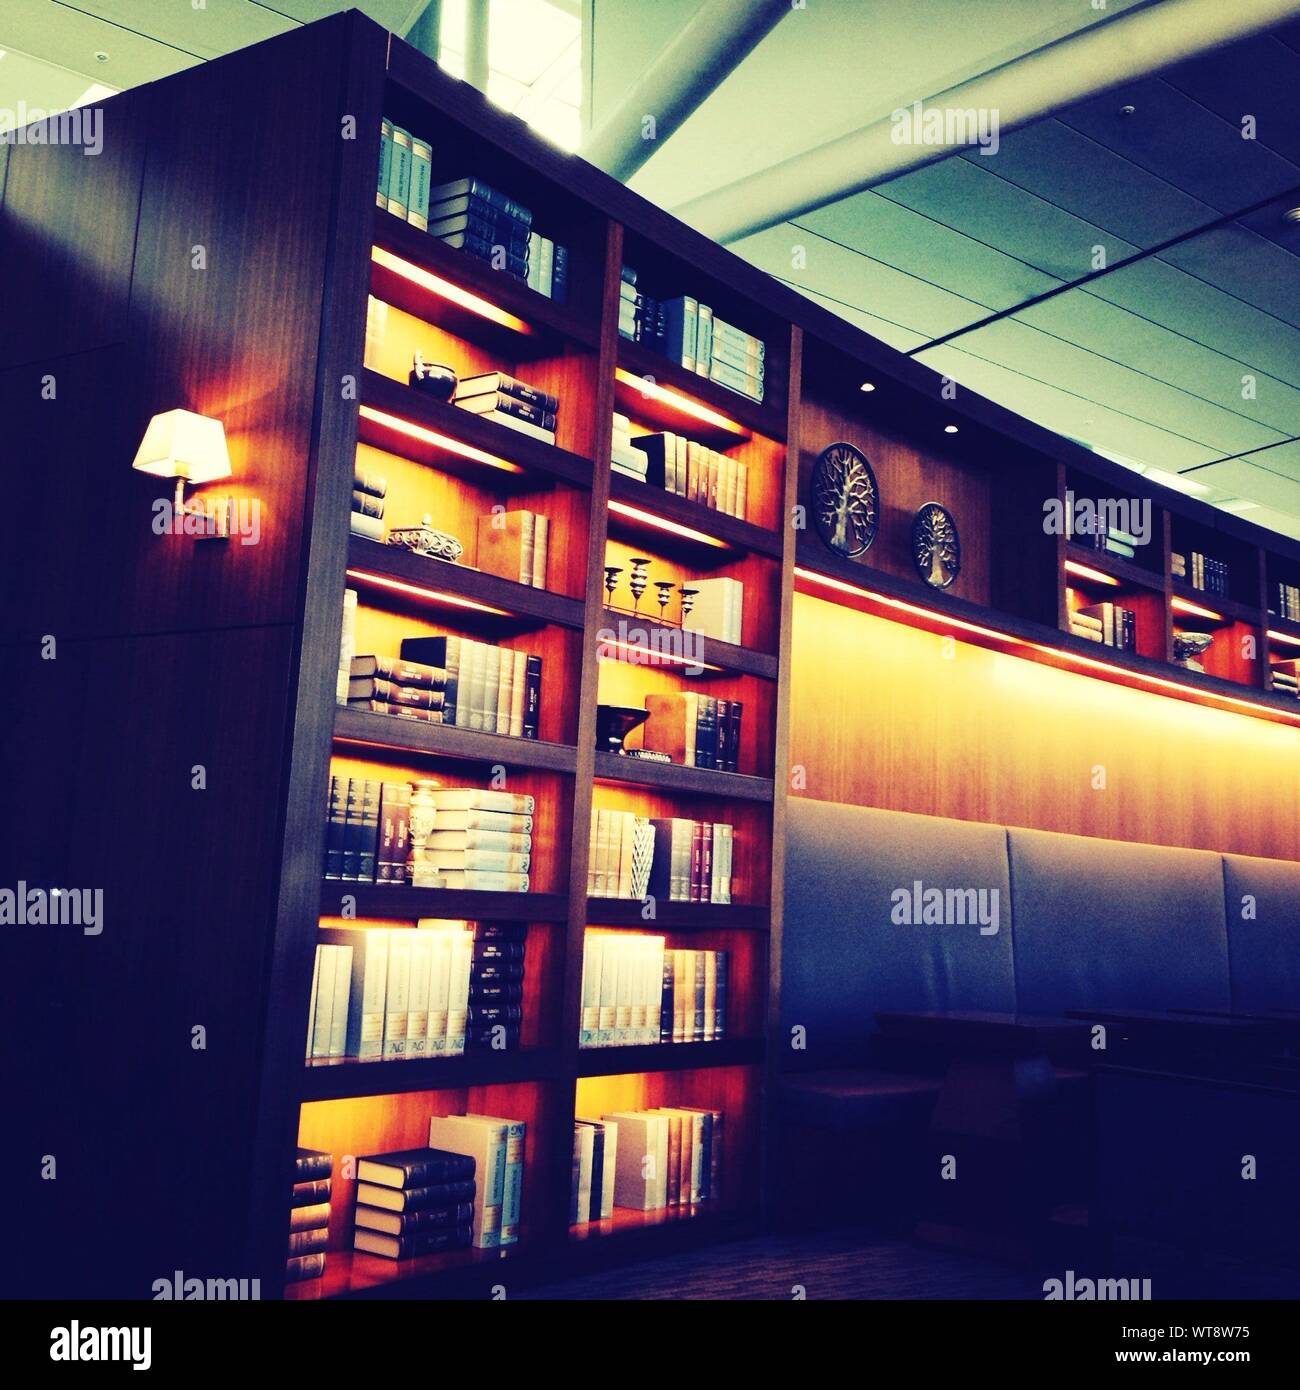 View Of Illuminated Bookshelf Stock Photo